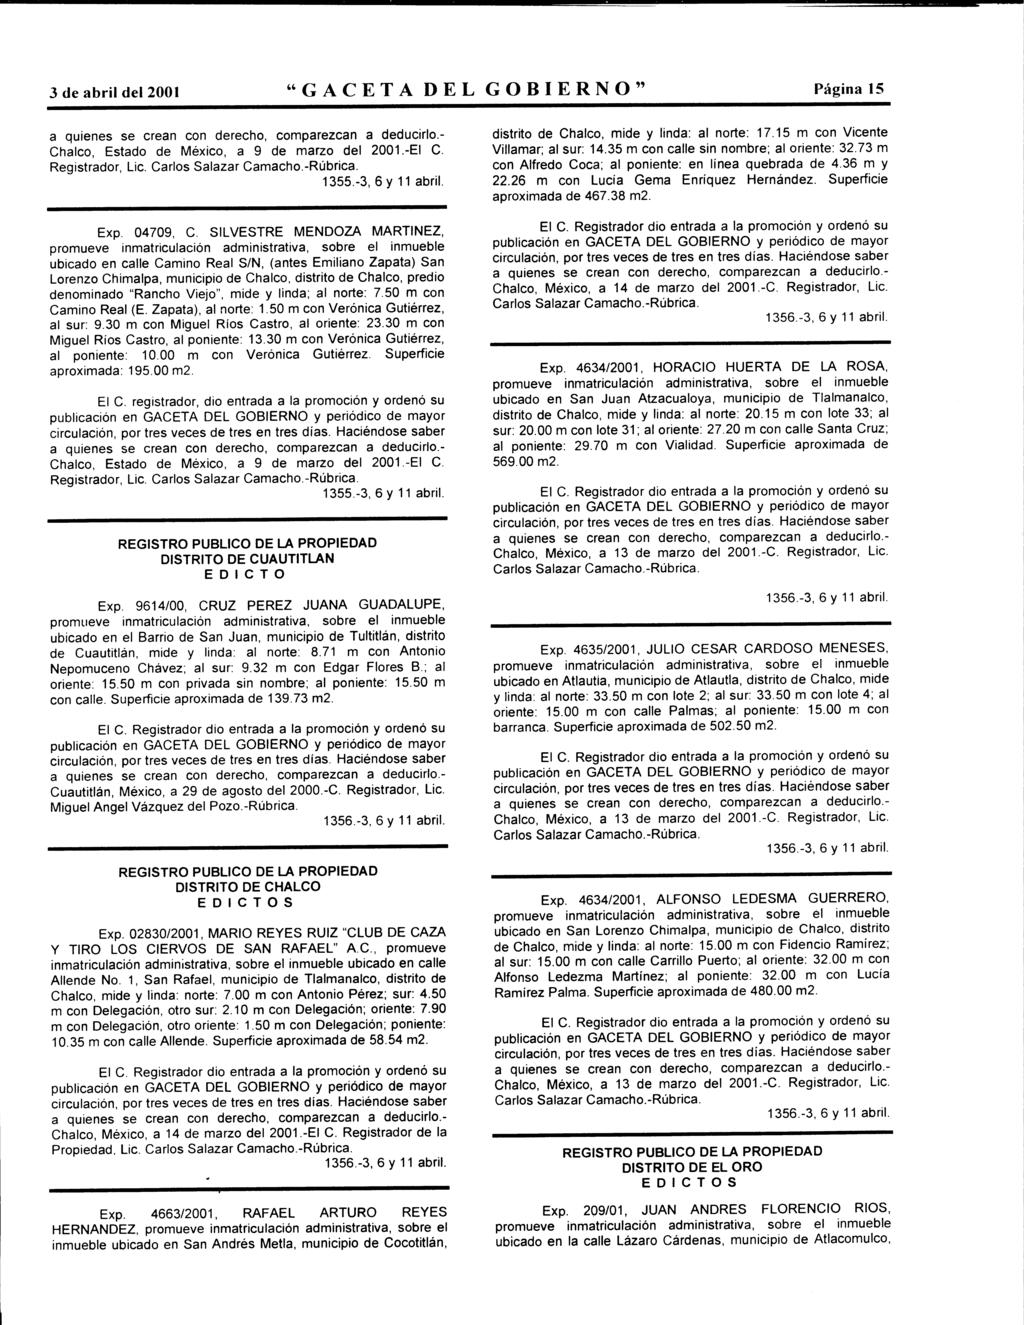 3 de abril del 2001 "GACETA DEL GOBIERNO" Página 15 Chalc, Estad de Méxic, a 9 de marz del 2001.-El C. Registradr, Lic. Carls Salazar Camach.-Rúbrica. Exp. 04709, C.